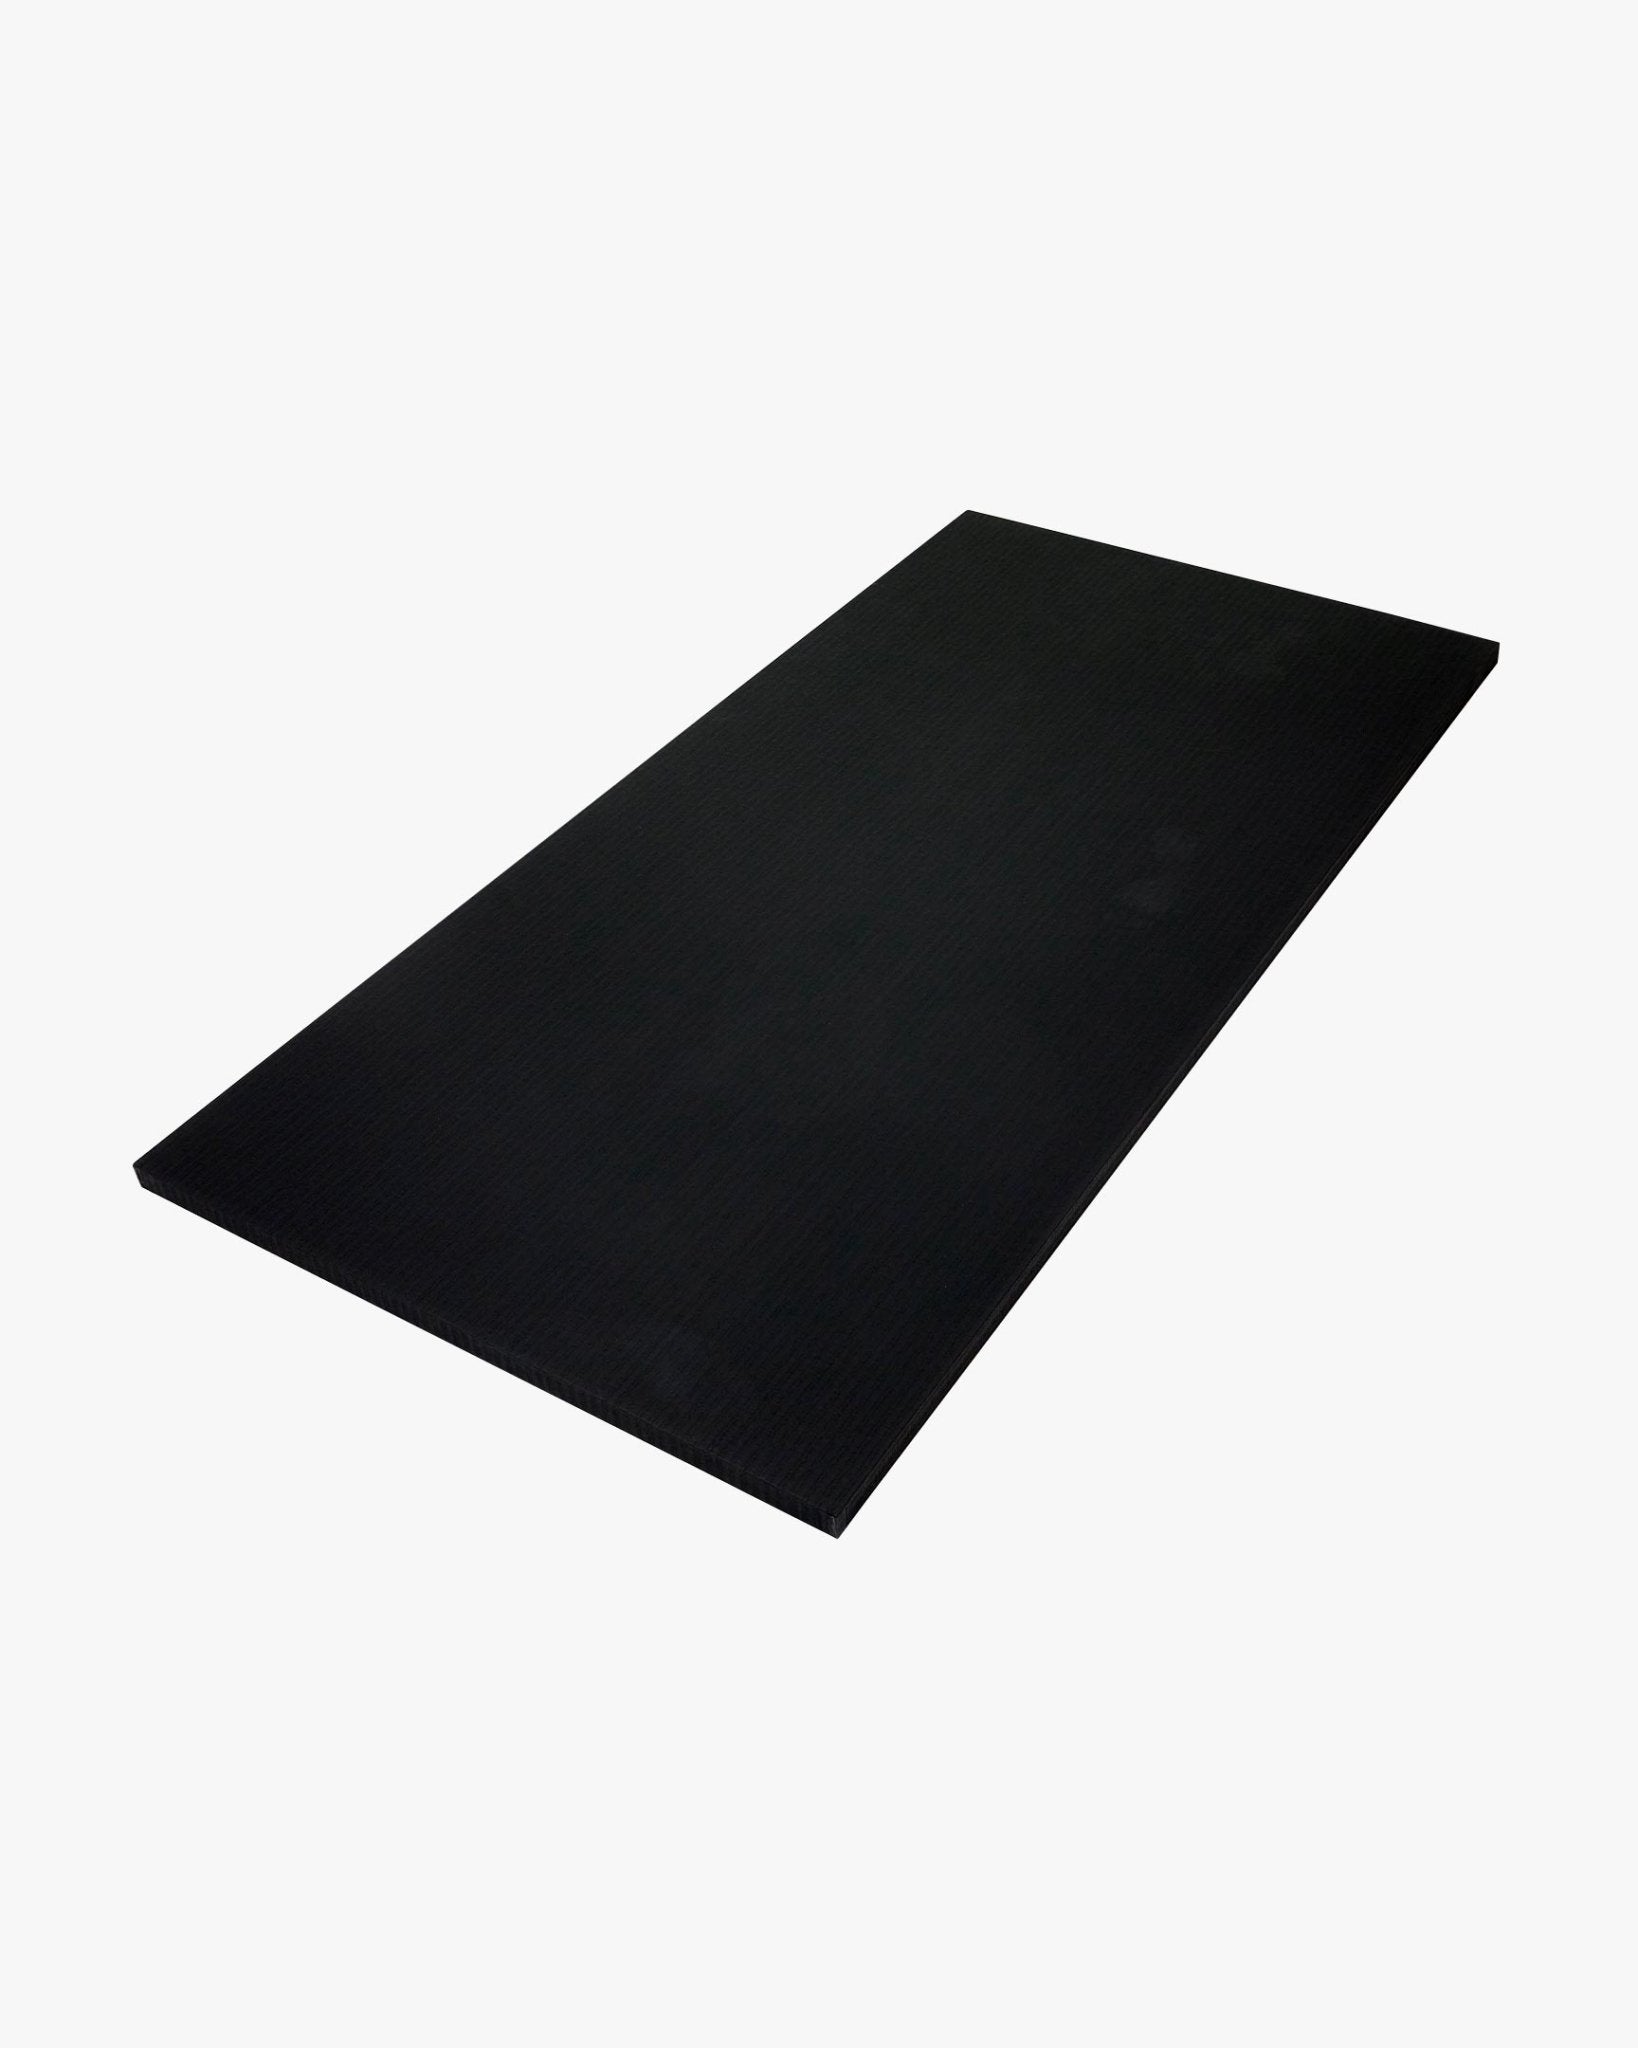 Tatami Tile Mat 1m x 2m x 1.5" Black